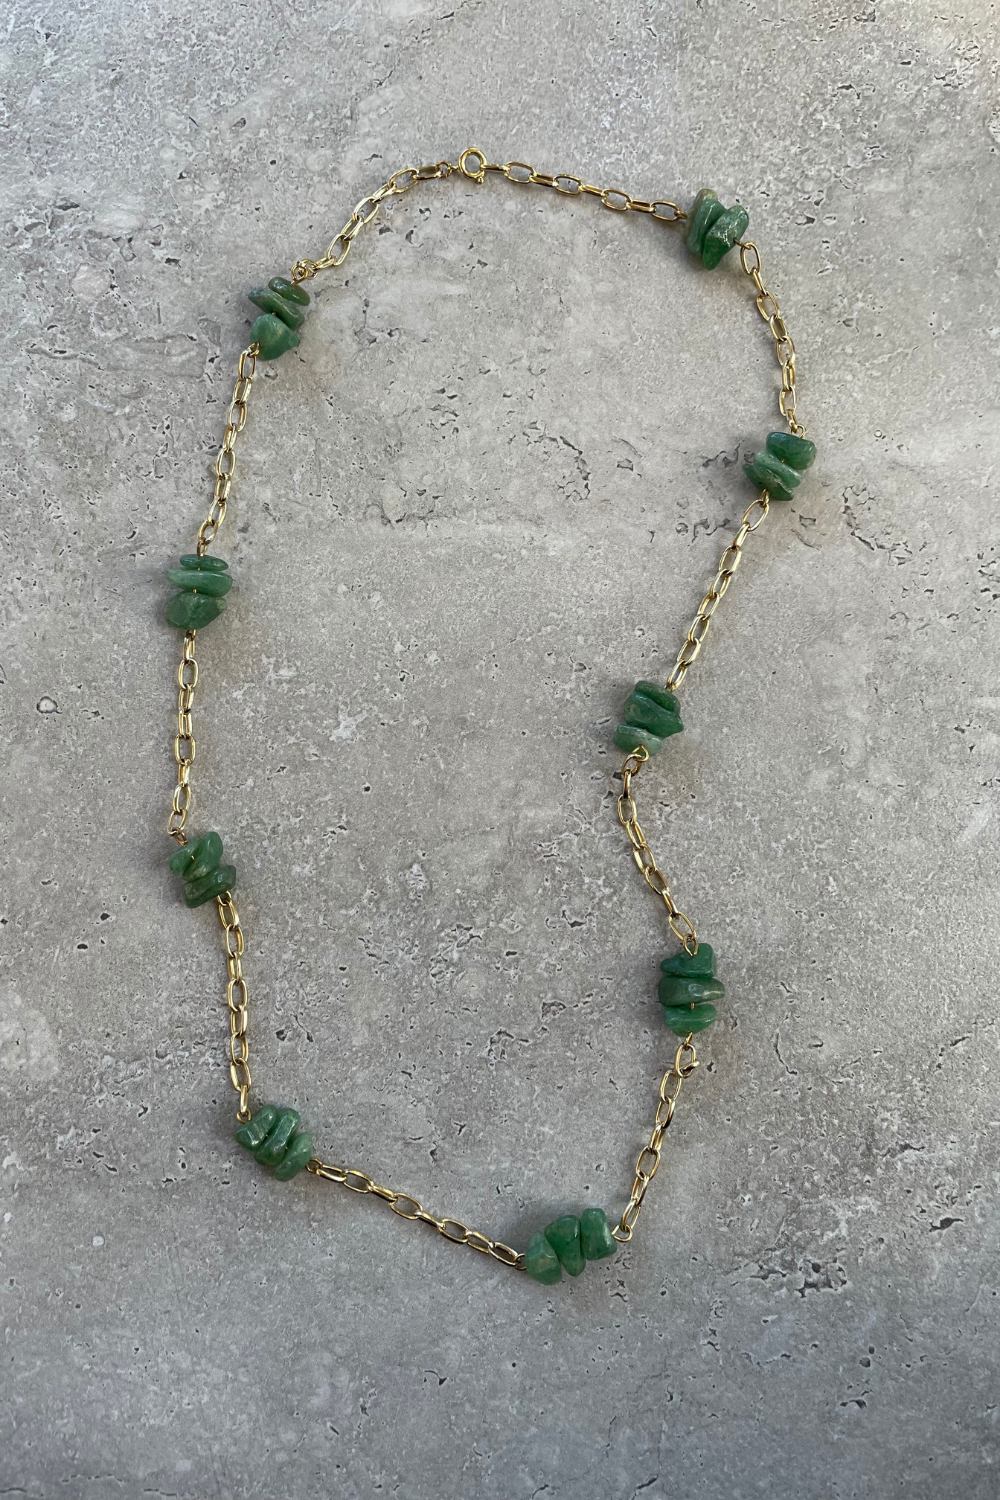 Verdi chain necklace